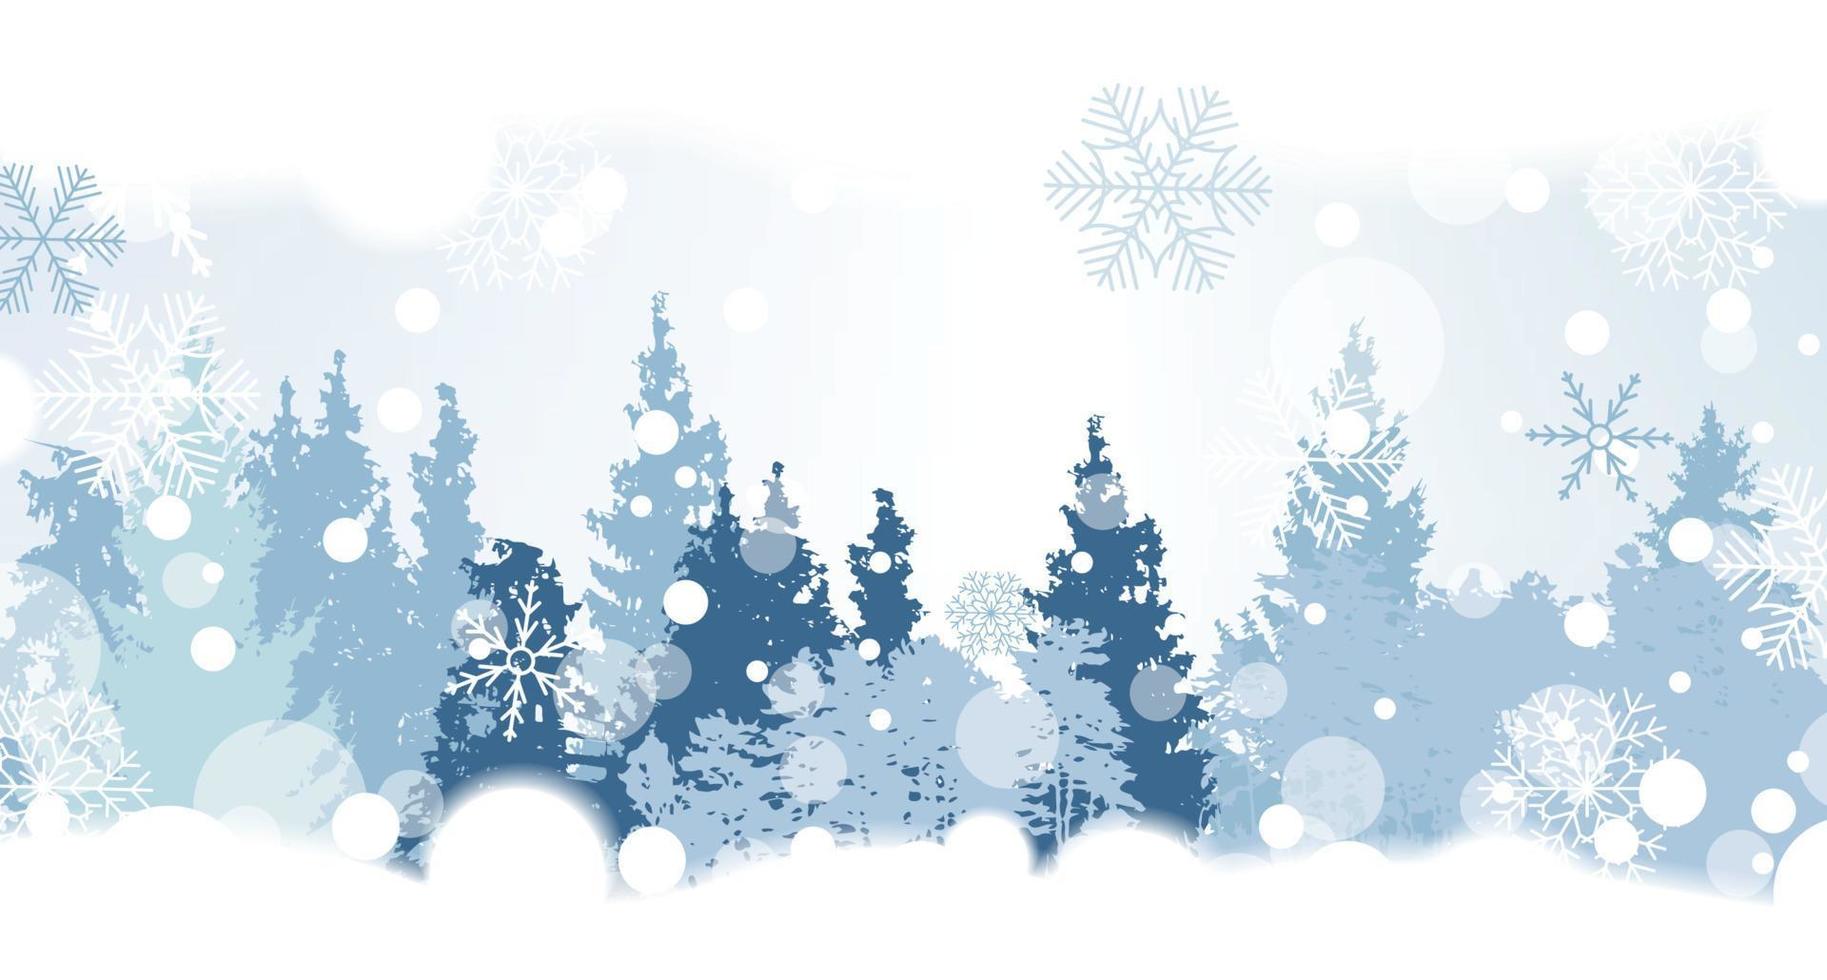 kerst sneeuwvlokken op de achtergrond met een silhouet van bomen. vectorillustratie. vector